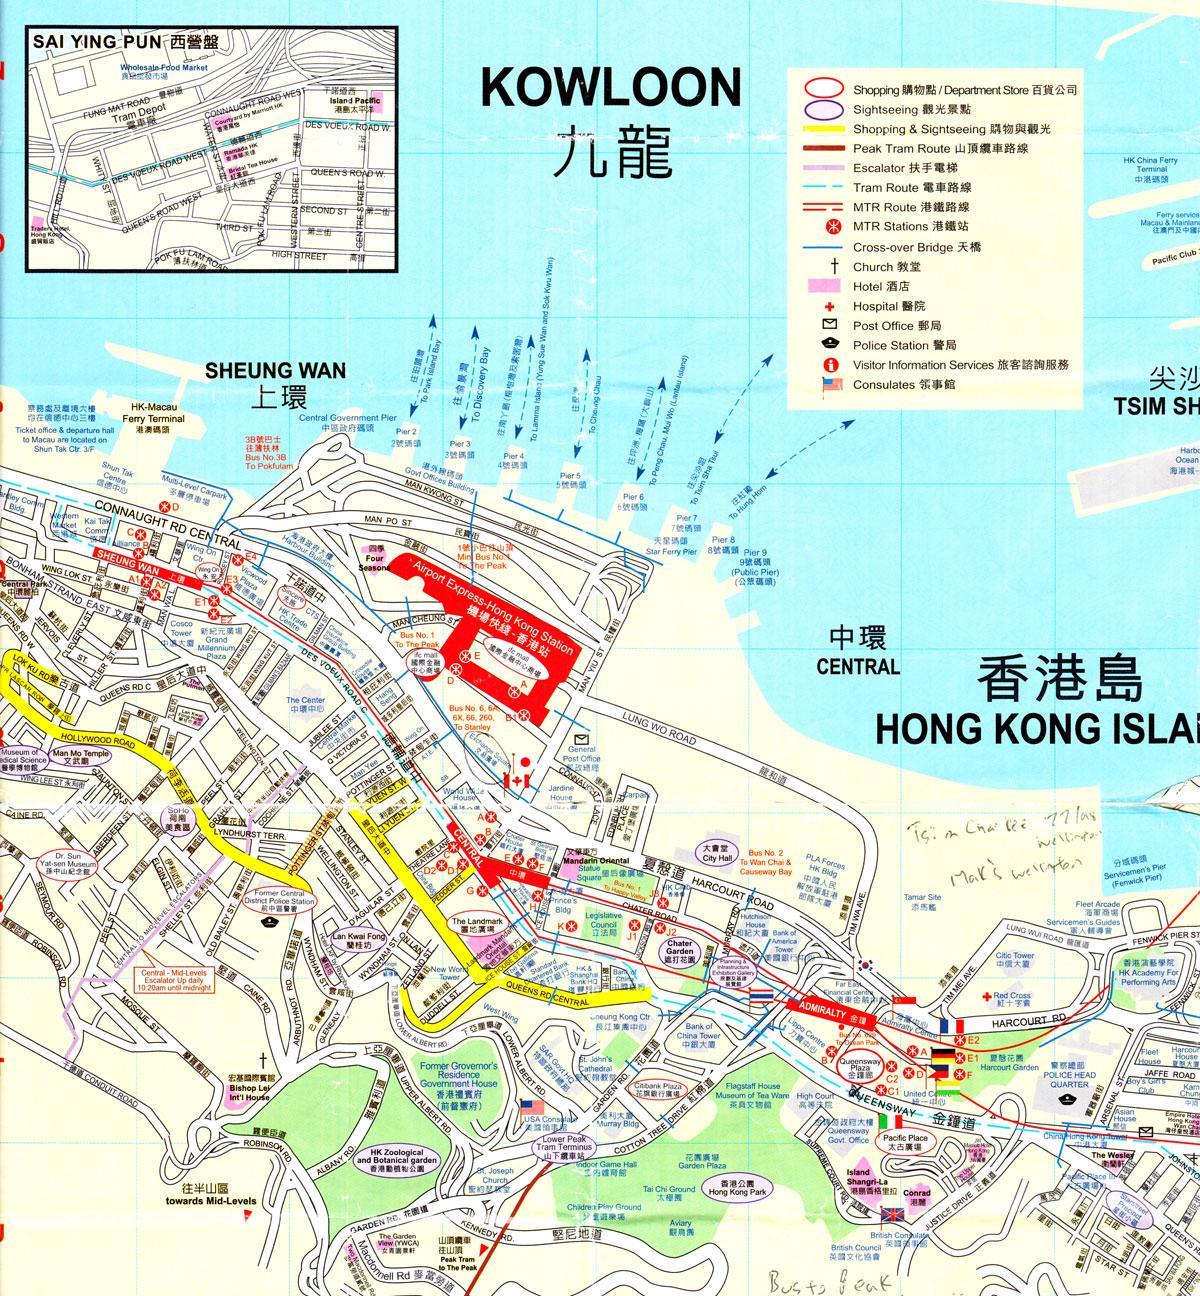 بندر هنگ کنگ نقشه